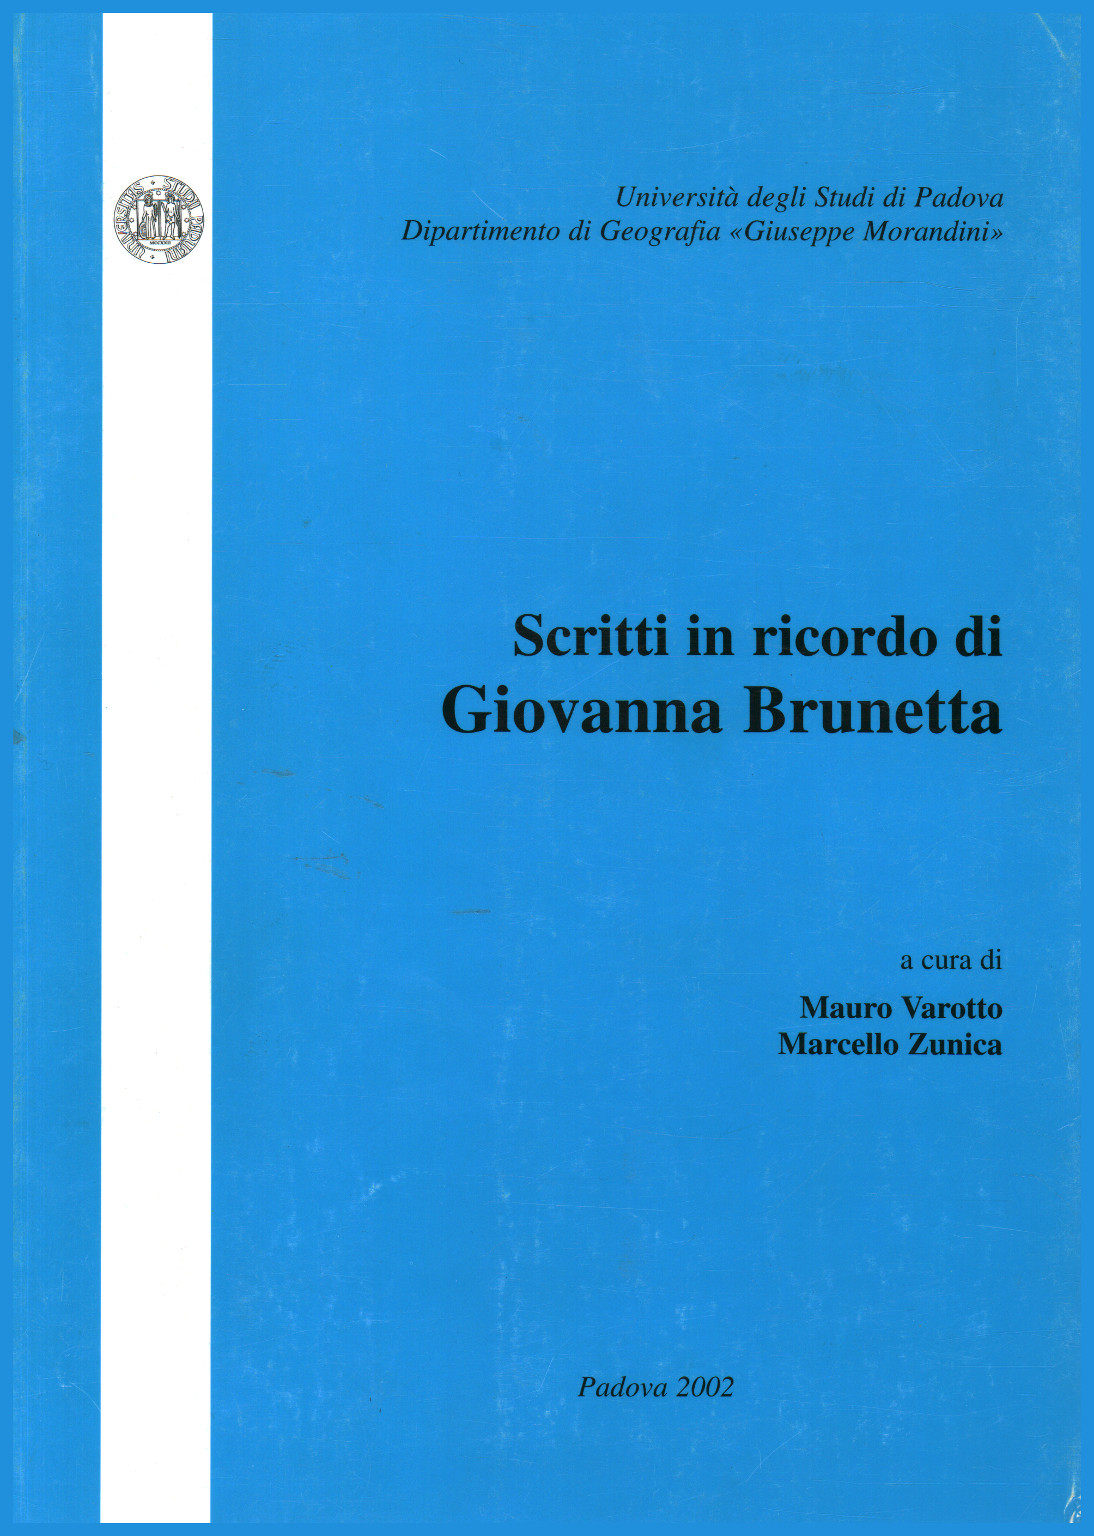 Escrito en la memoria de Giovanna Brunetta, Mauro Varotto Marcello Zunica